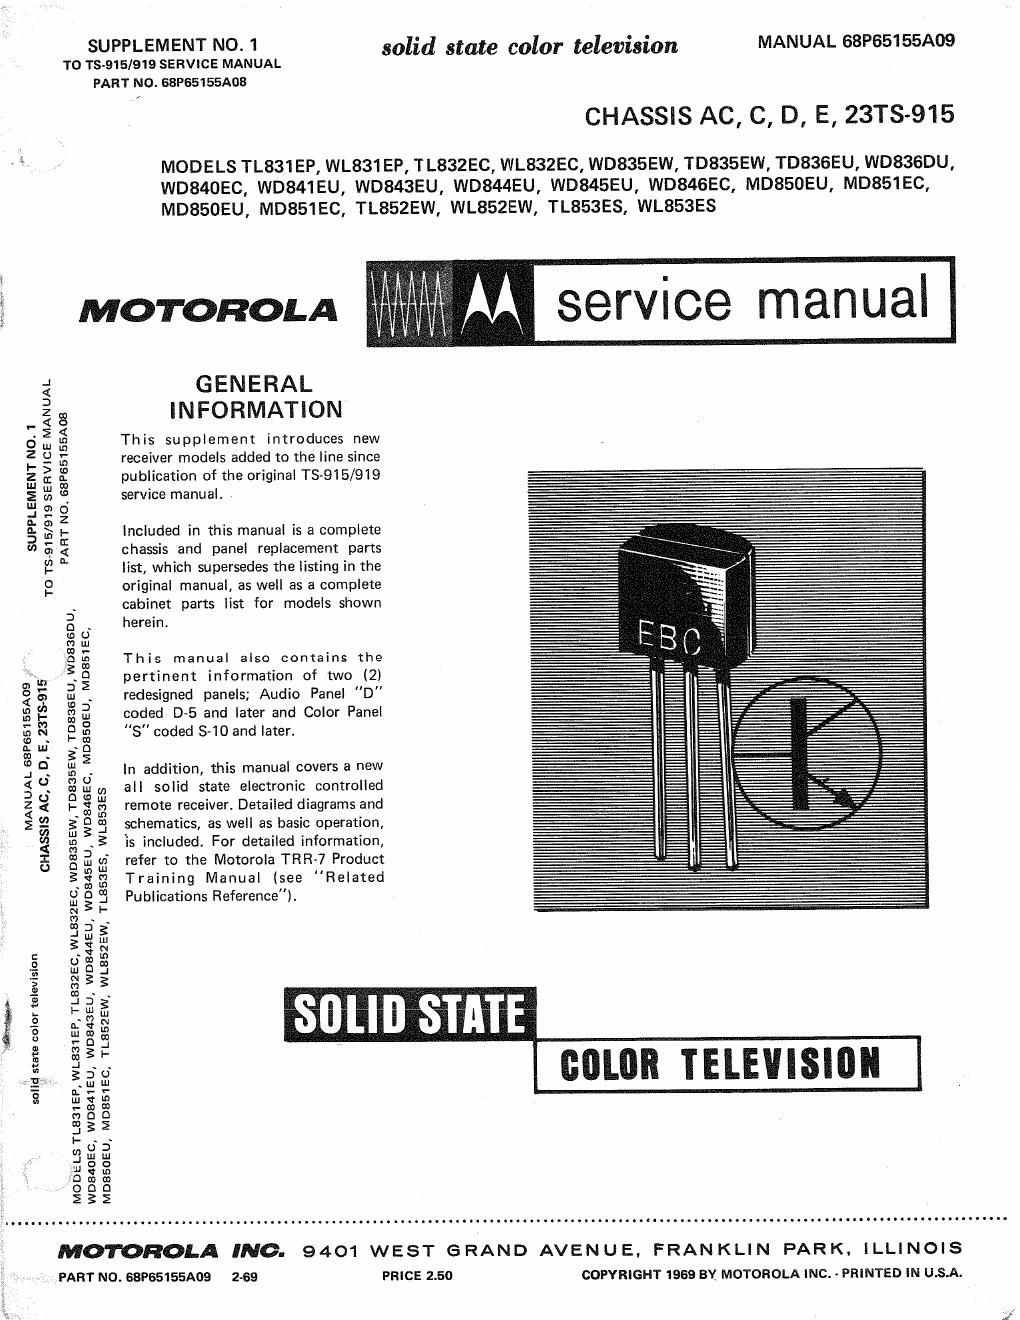 motorola wl 853 es service manual